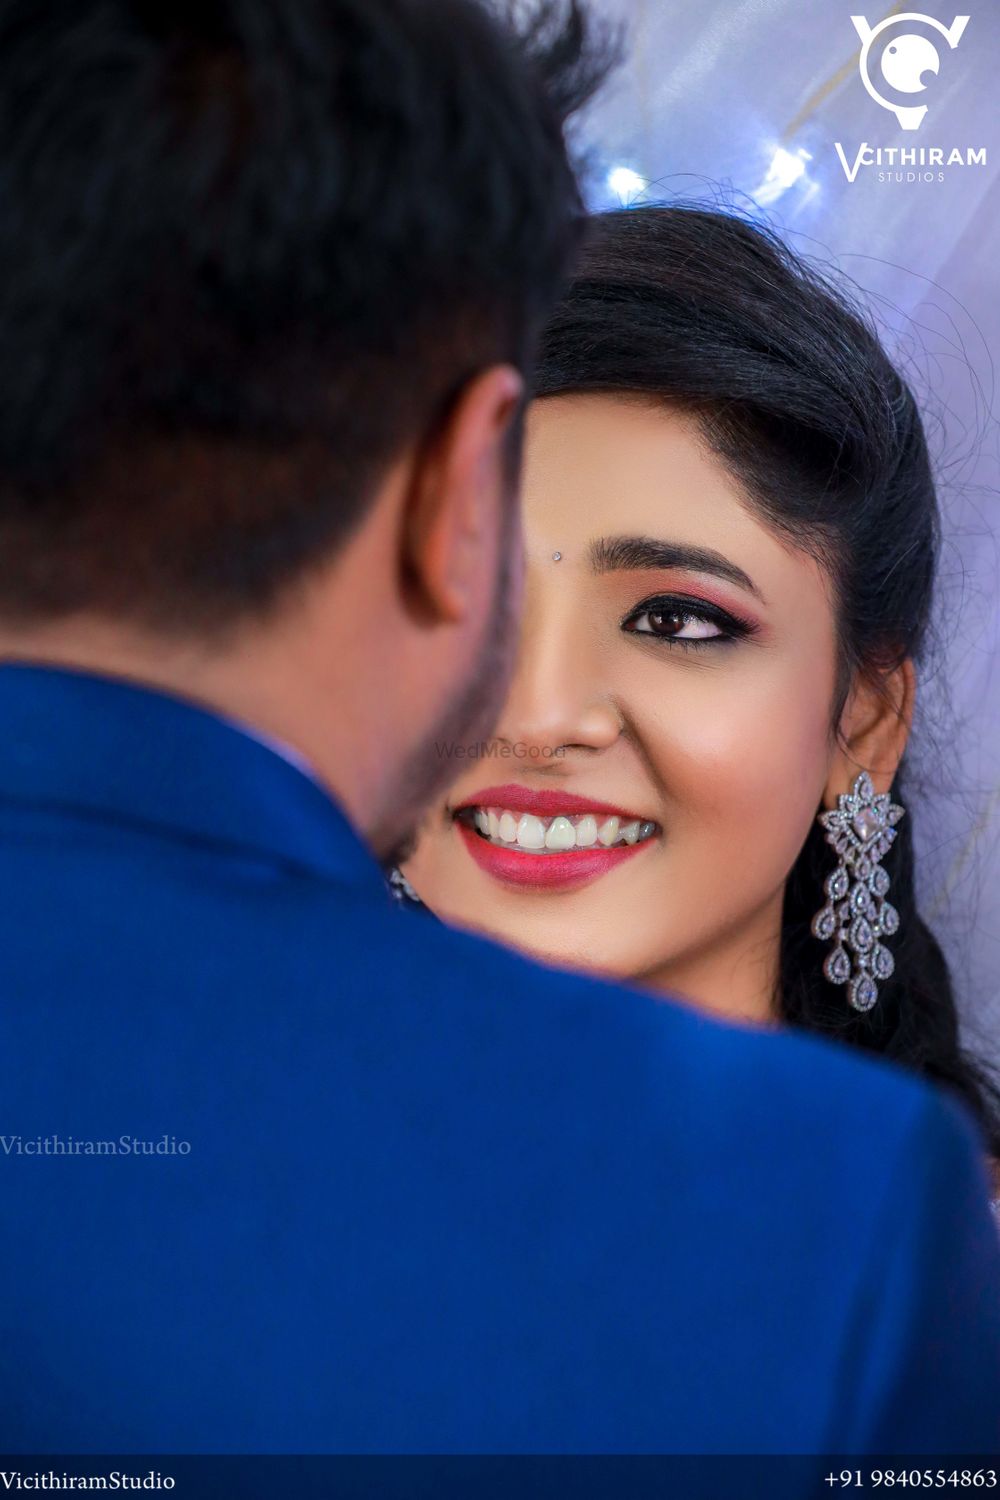 Photo From Roshan & Nandhini I Trichi wedding - By Vicithiram Studio